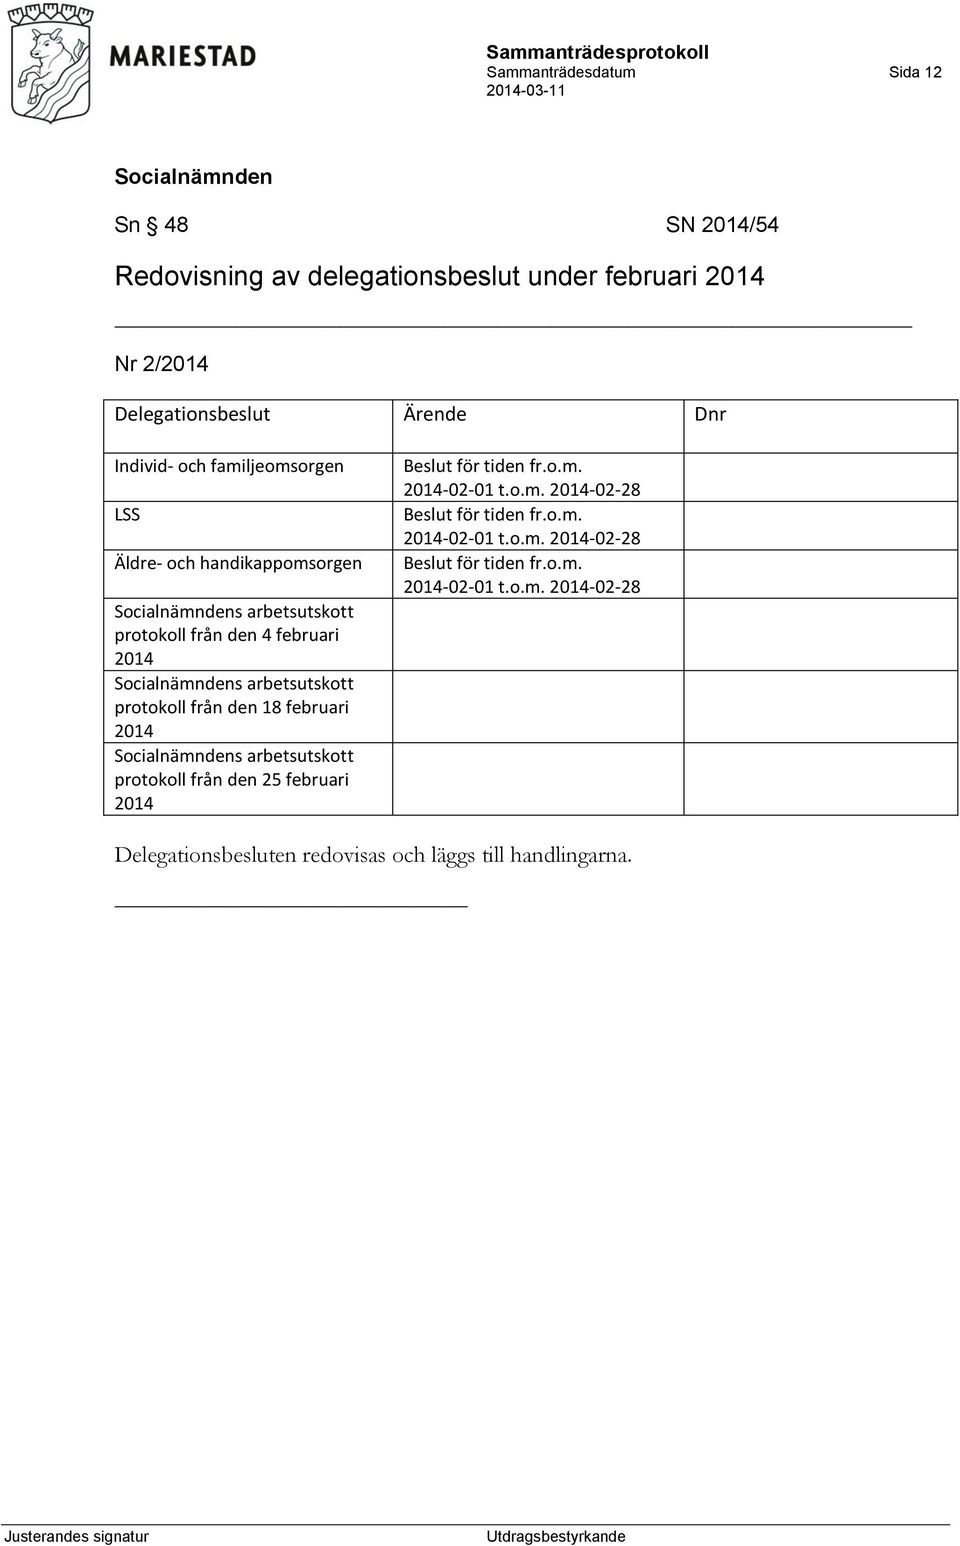 från den 18 februari 2014 s arbetsutskott protokoll från den 25 februari 2014 Beslut för tiden fr.o.m. 2014-02-01 t.o.m. 2014-02-28 Beslut för tiden fr.